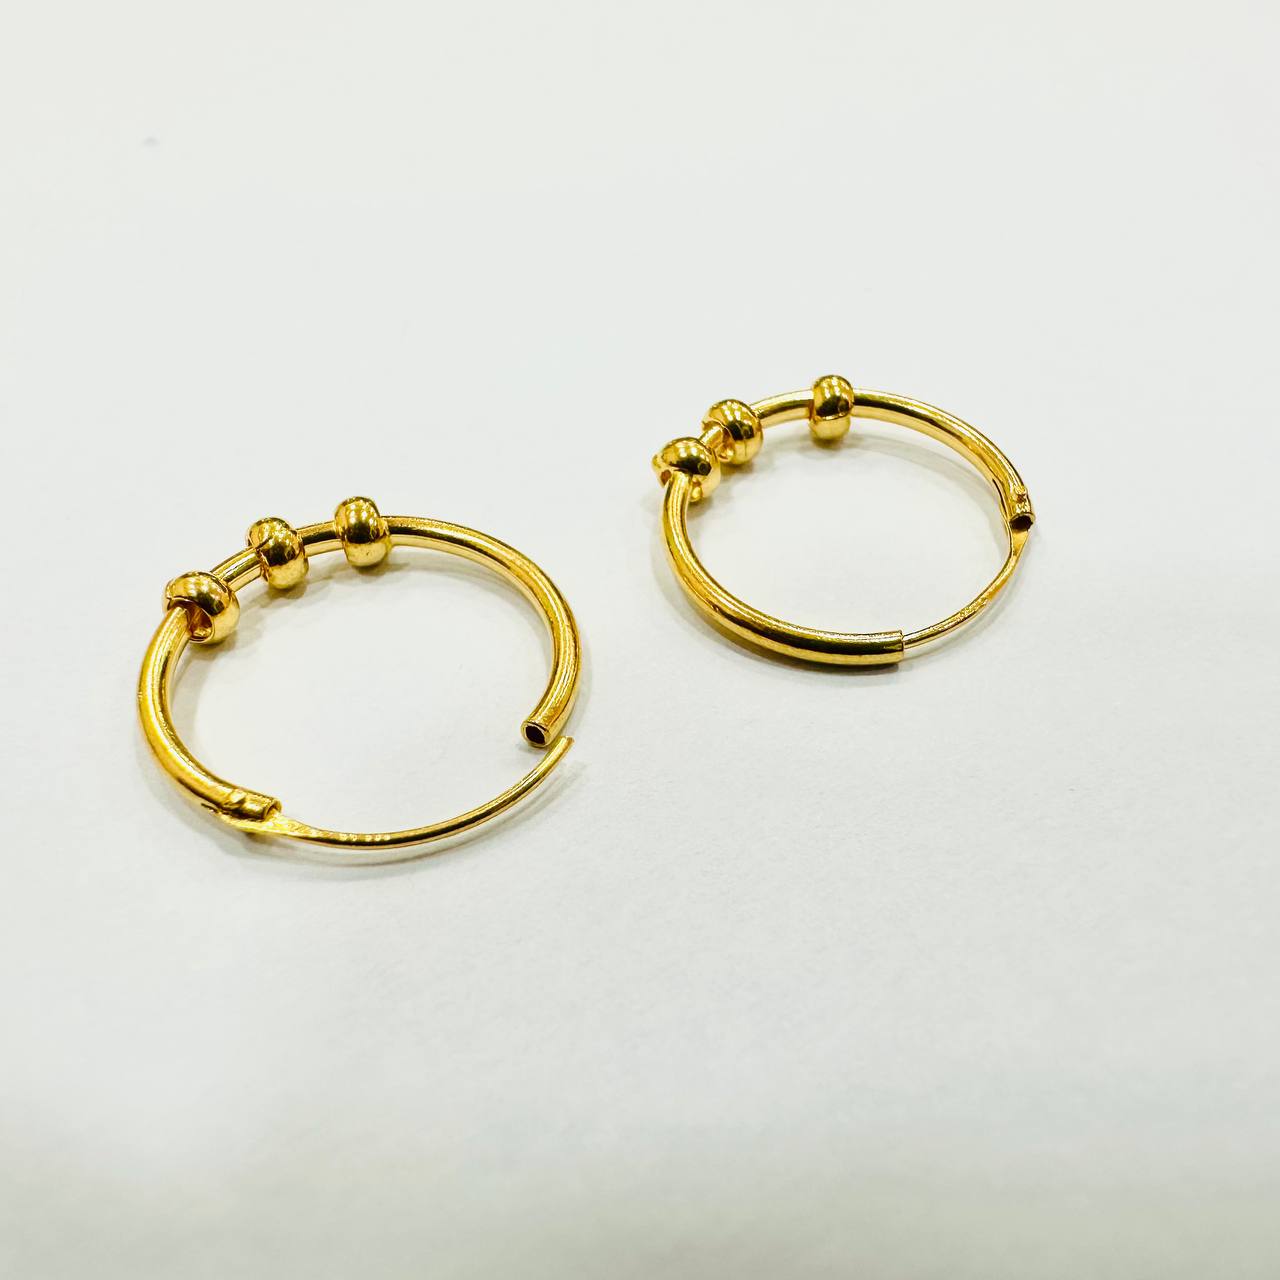 22k / 916 Gold Ball Loop Earring-916 gold-Best Gold Shop